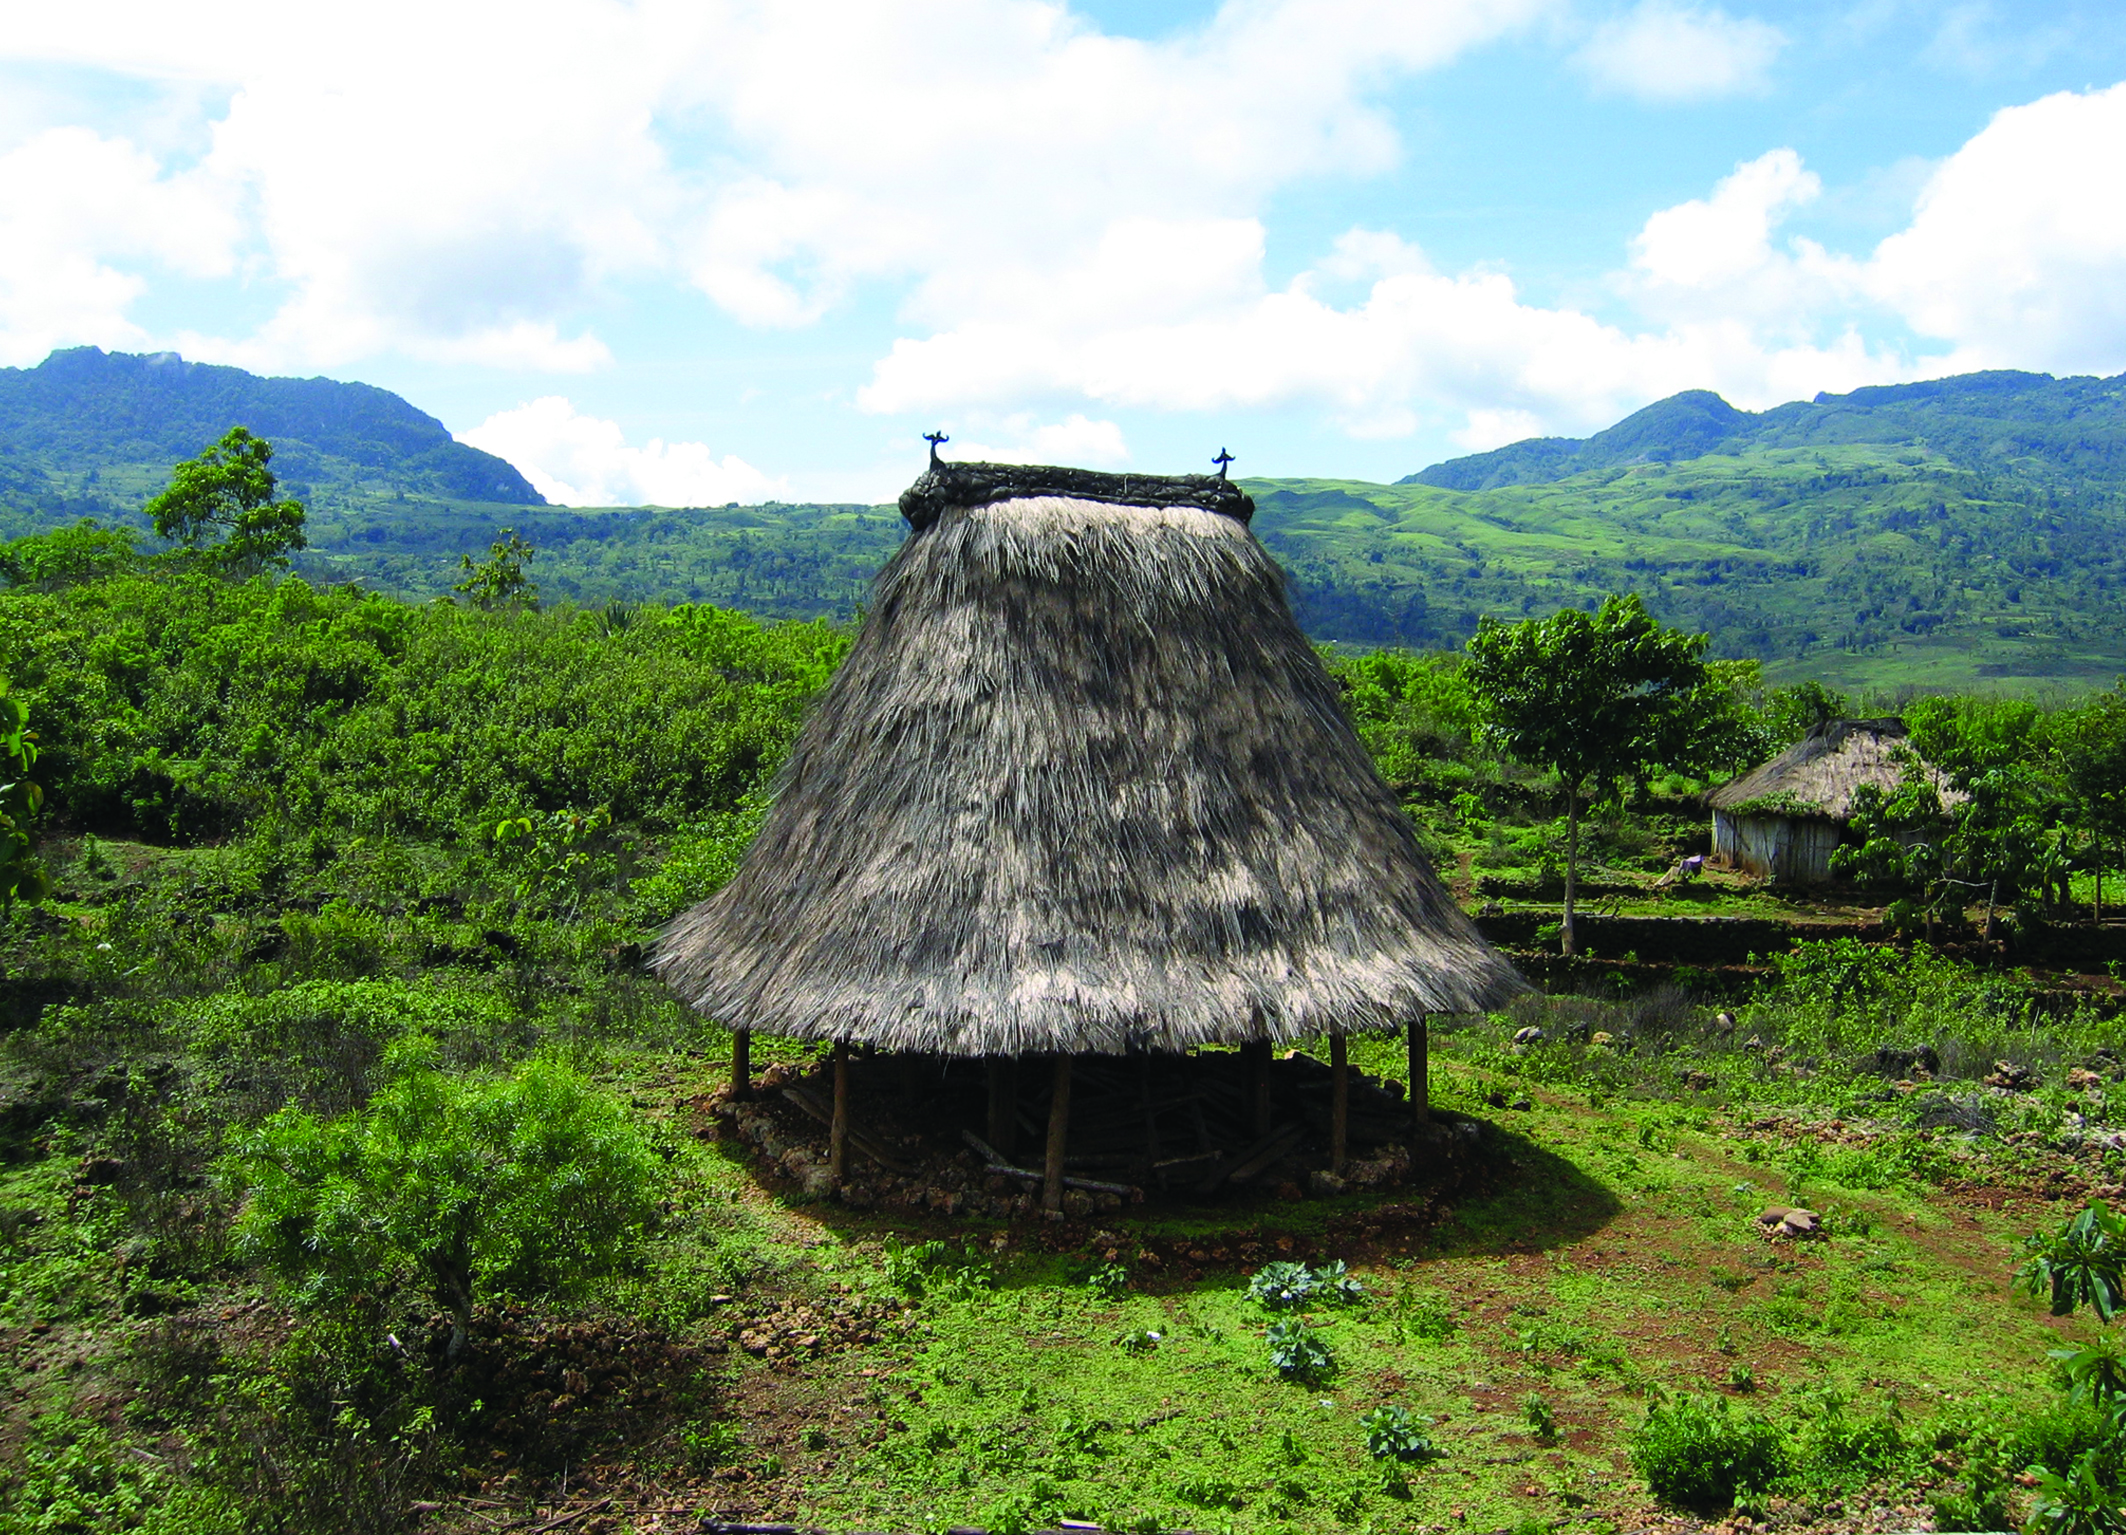 Imagem de Casa Sagrada do Timor Leste - no idioma local, "Uma Lulik"